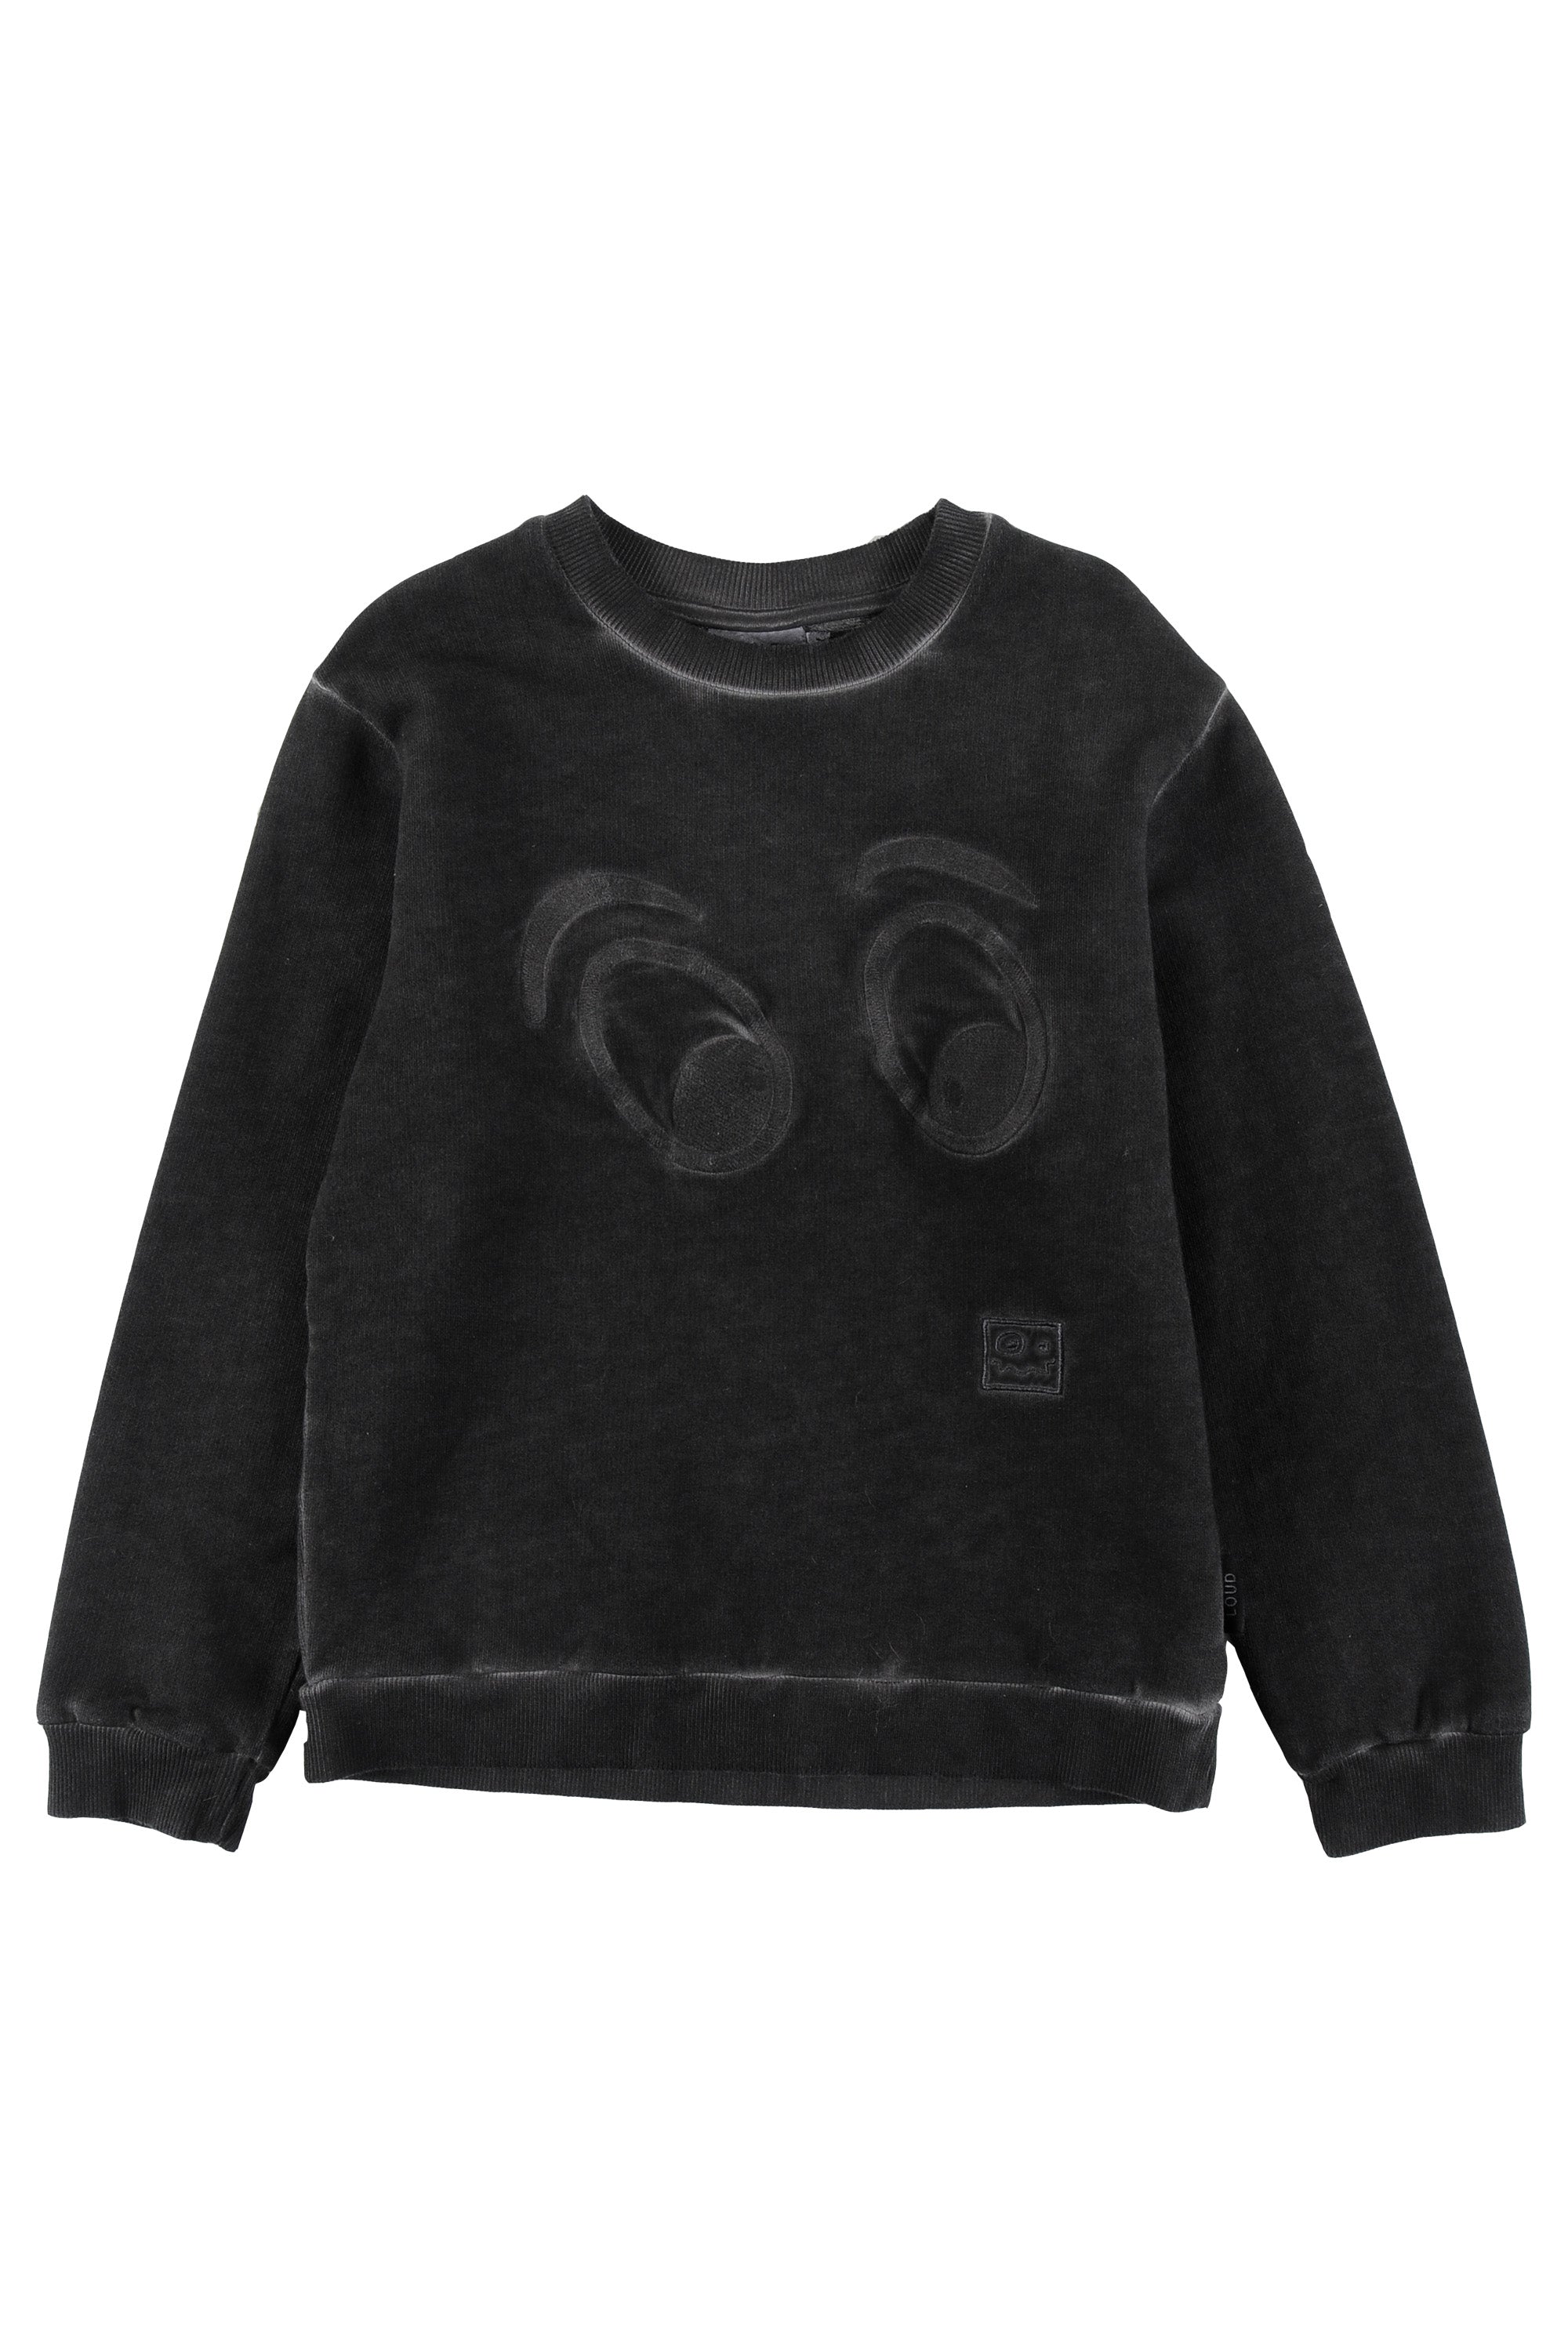 Loud Cub Life Black Apparel Sweater and – Panda